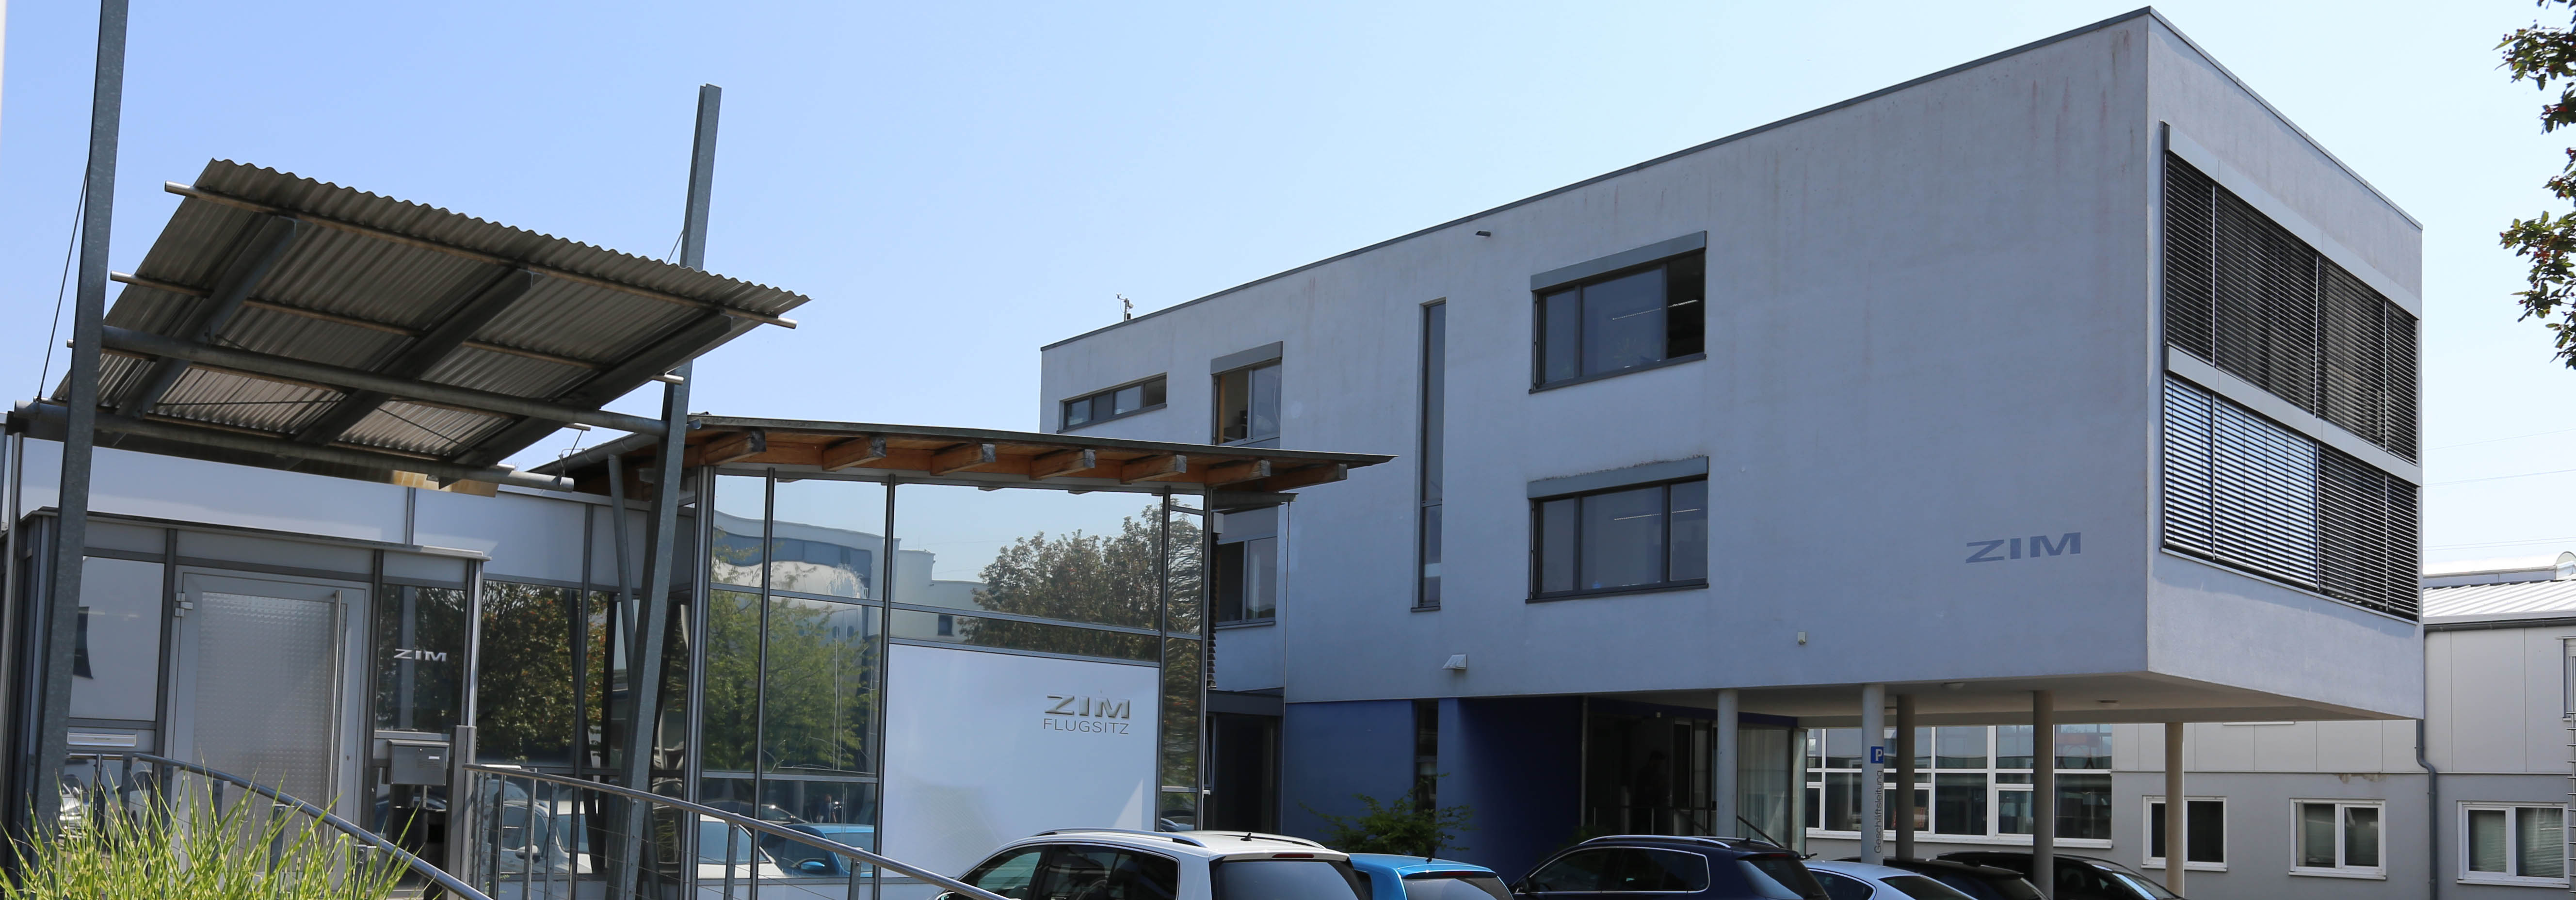 ZIM Flugsitz GmbH Insolvenz in Eigenverwaltung